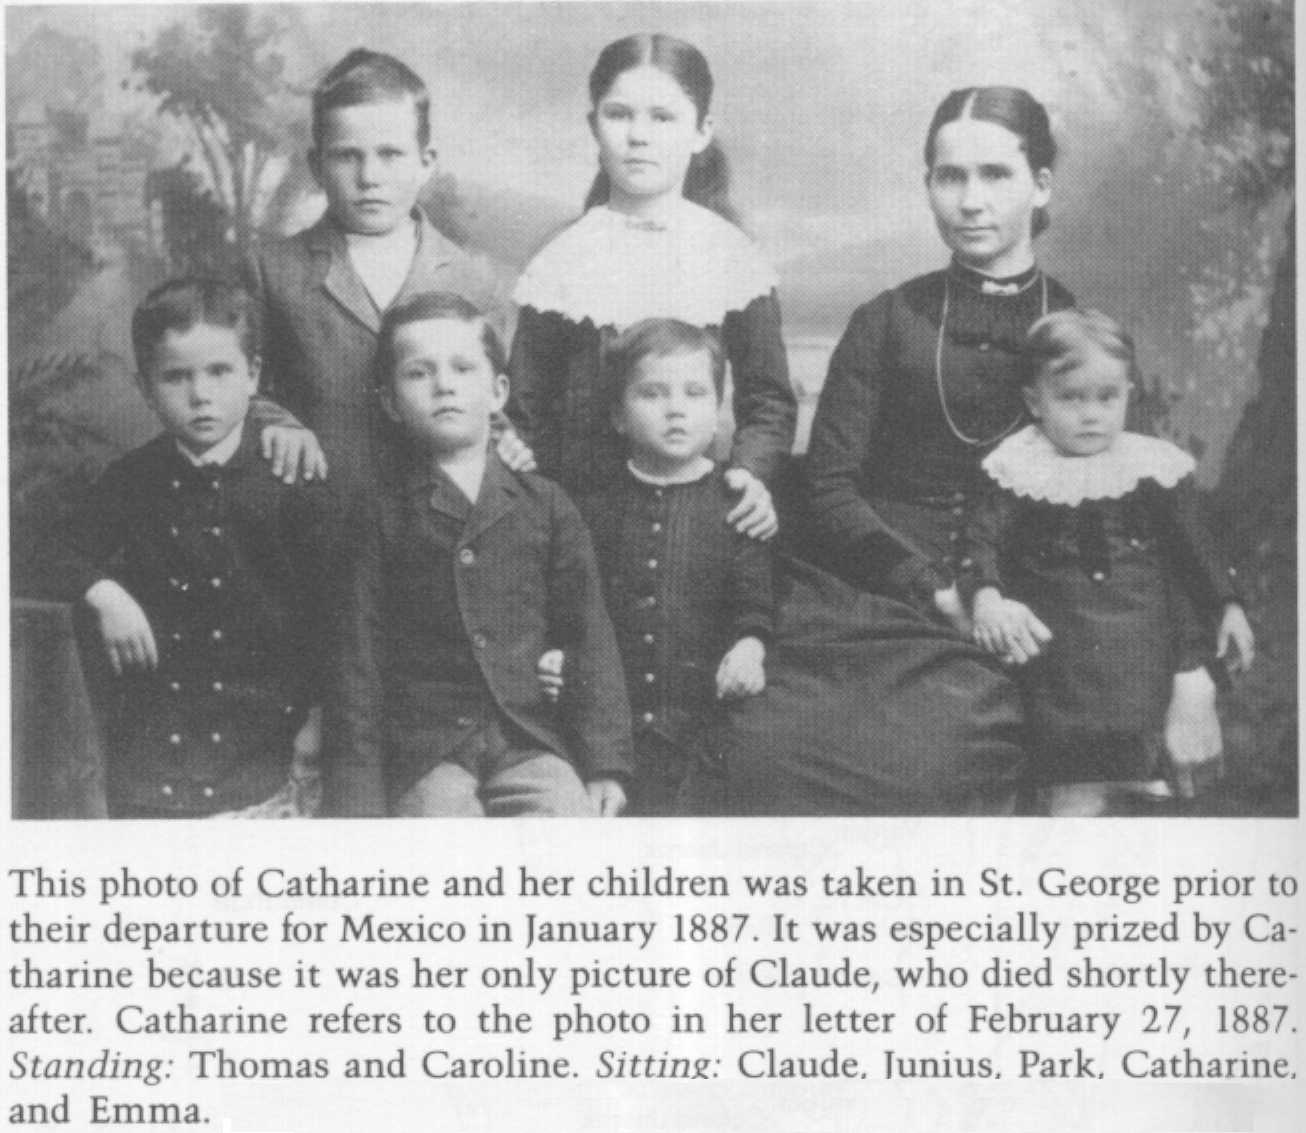 Catherine Jane Cottam Romney with her children in 1887